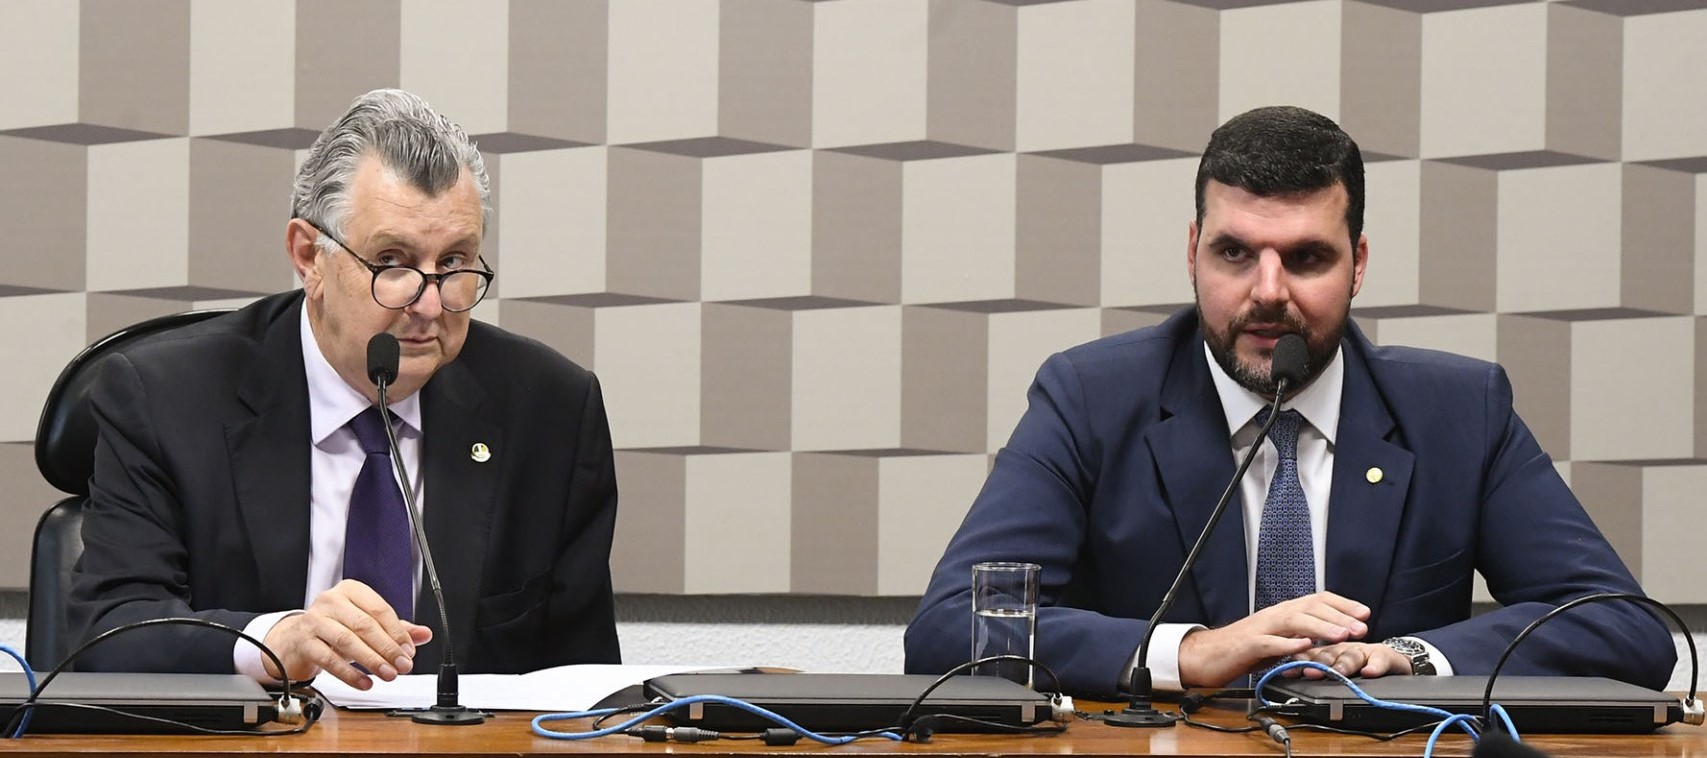 Deputado Pedro Lupion (DEM-PR), presidente da CMMPV 897/2019, senador Luis Carlos Heinze (PP-RS) Foto: Marcos Oliveira/Agência Senado